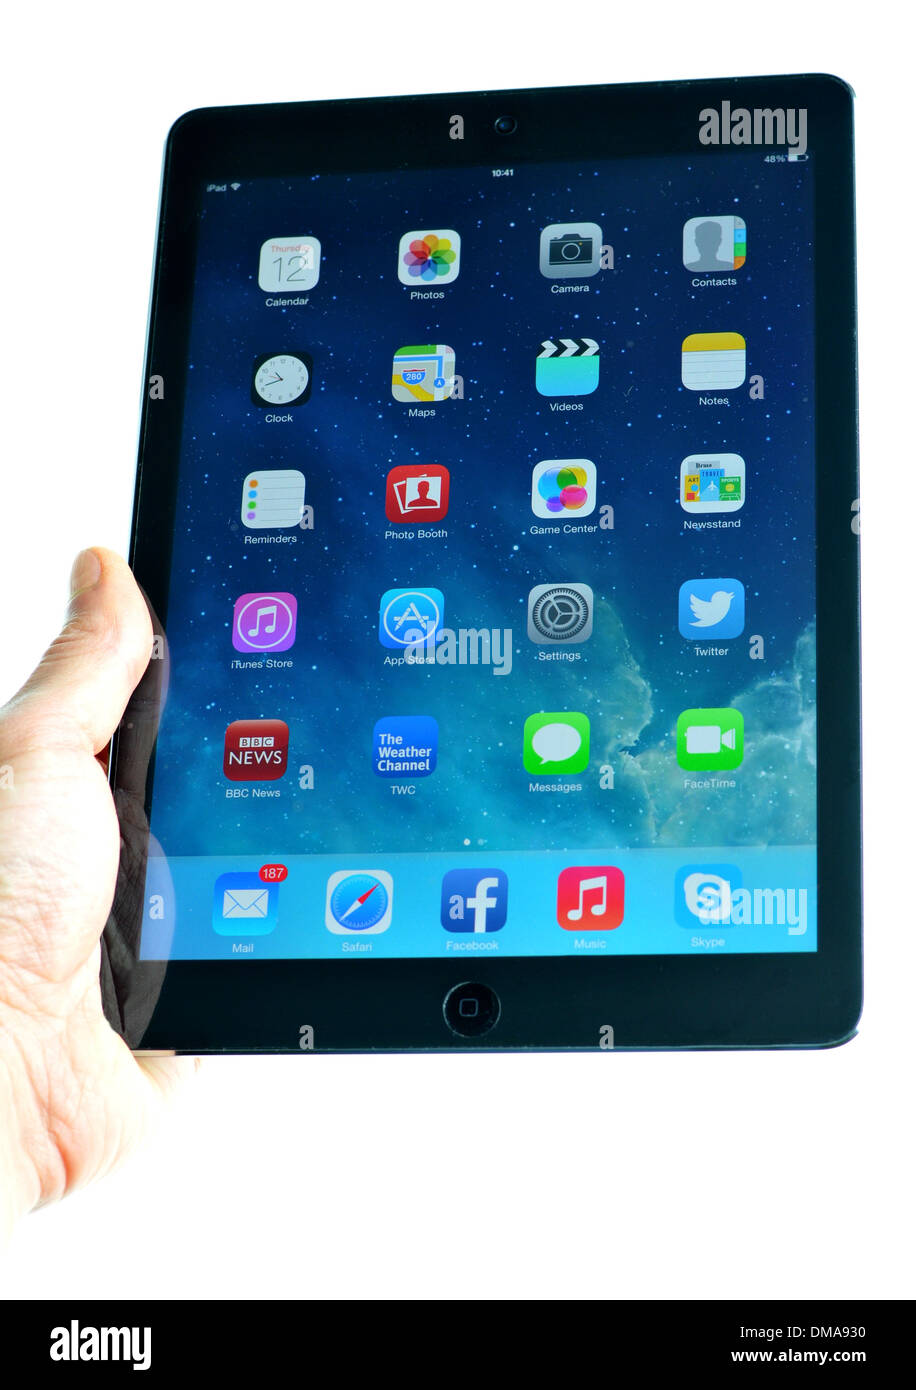 Londres, UK - 1 novembre, 2013 : Apple Inc. publie le nouvel iPad Air, la cinquième génération de l'ordinateur tablette iPad. Banque D'Images